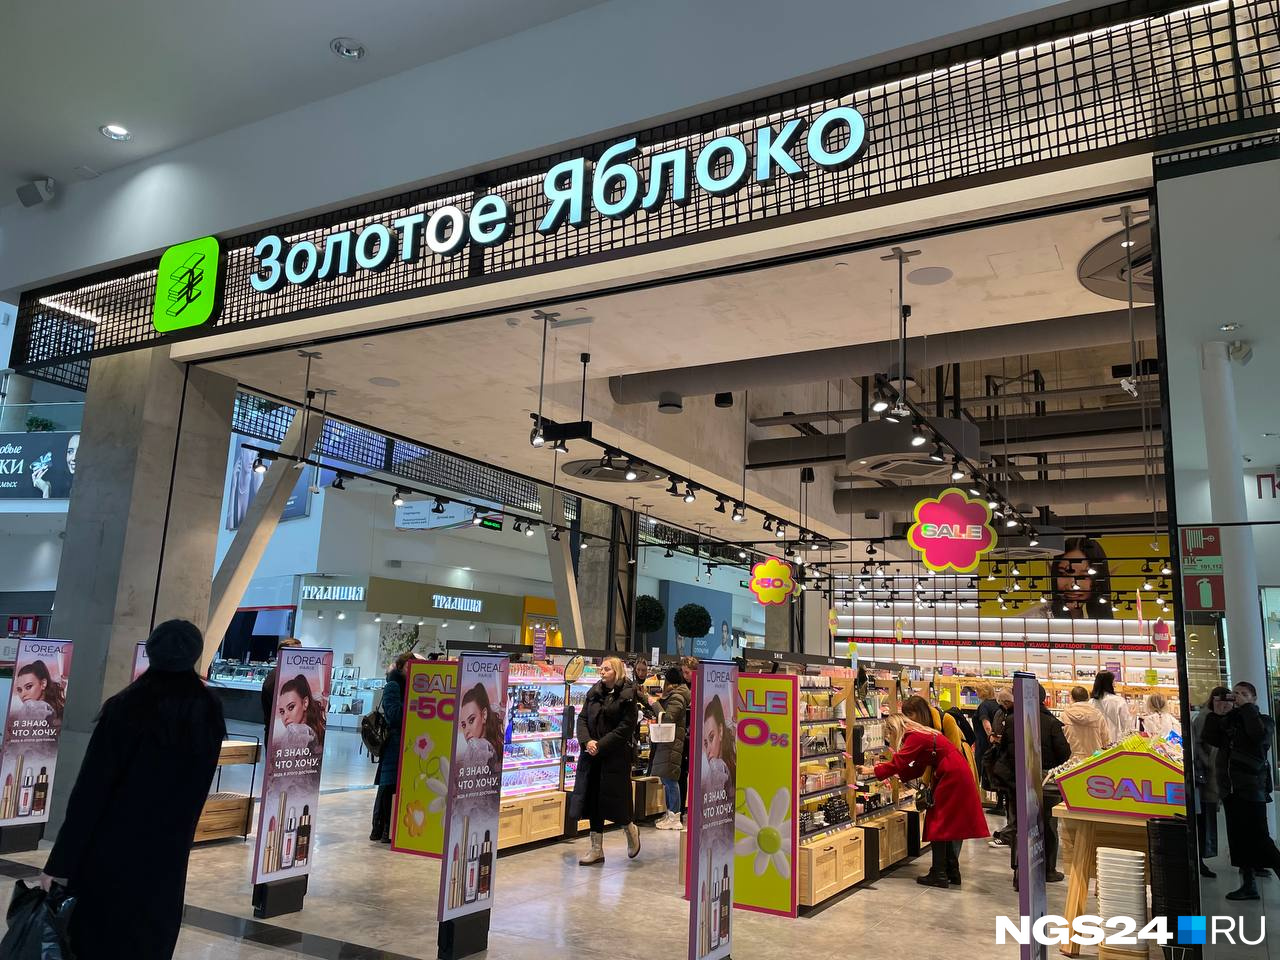 «Люкса пока нет»: в Красноярске открылся первый магазин сети «Золотое яблоко». Мы туда сходили